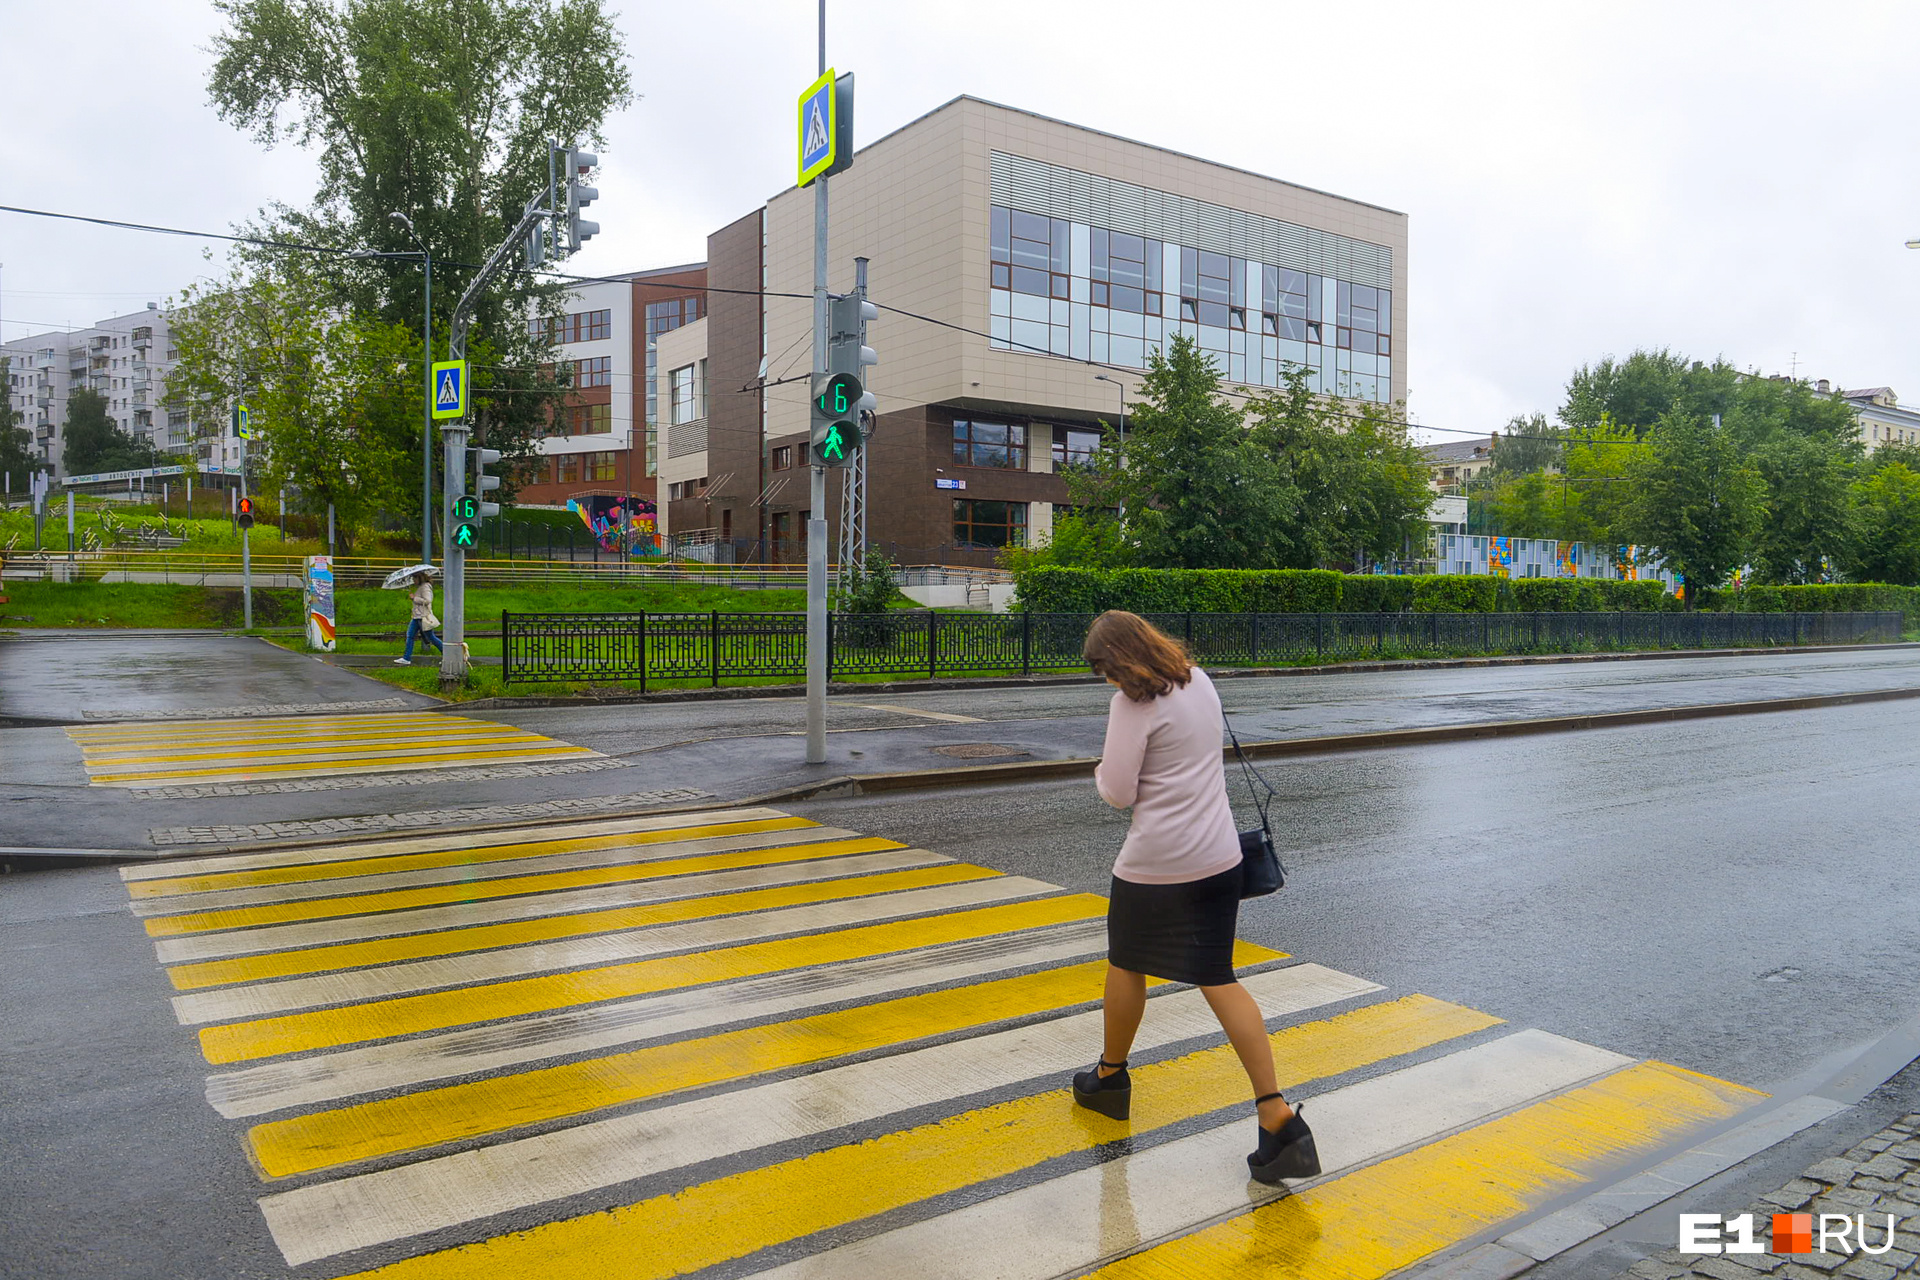 Со стороны ВИЗ-бульвара можно попасть в школу по пешеходному переходу